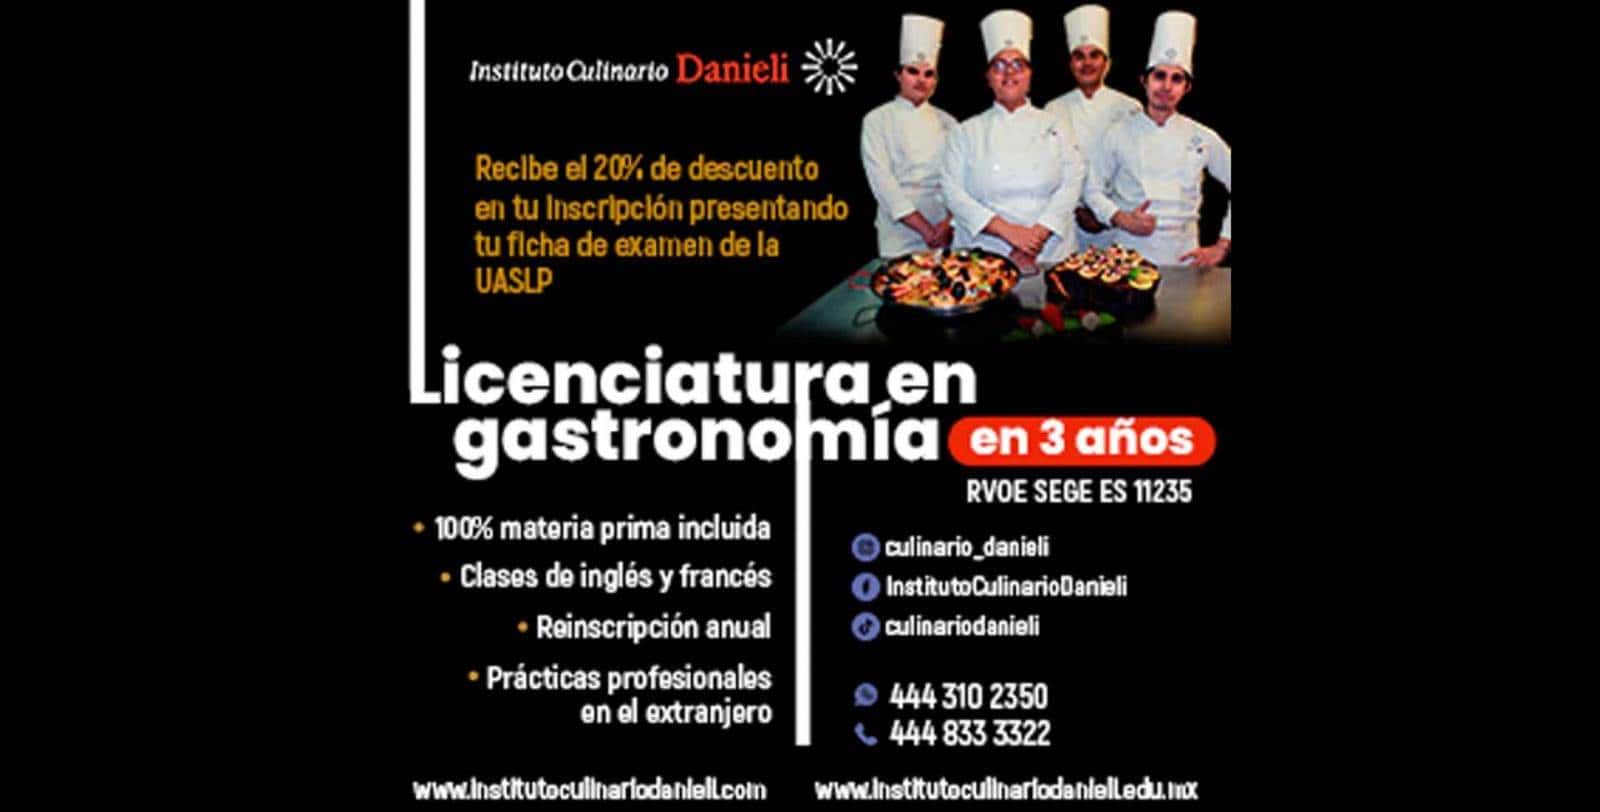 Llega la Licenciatura en Gastronomía, al Instituto Culinario Danieli